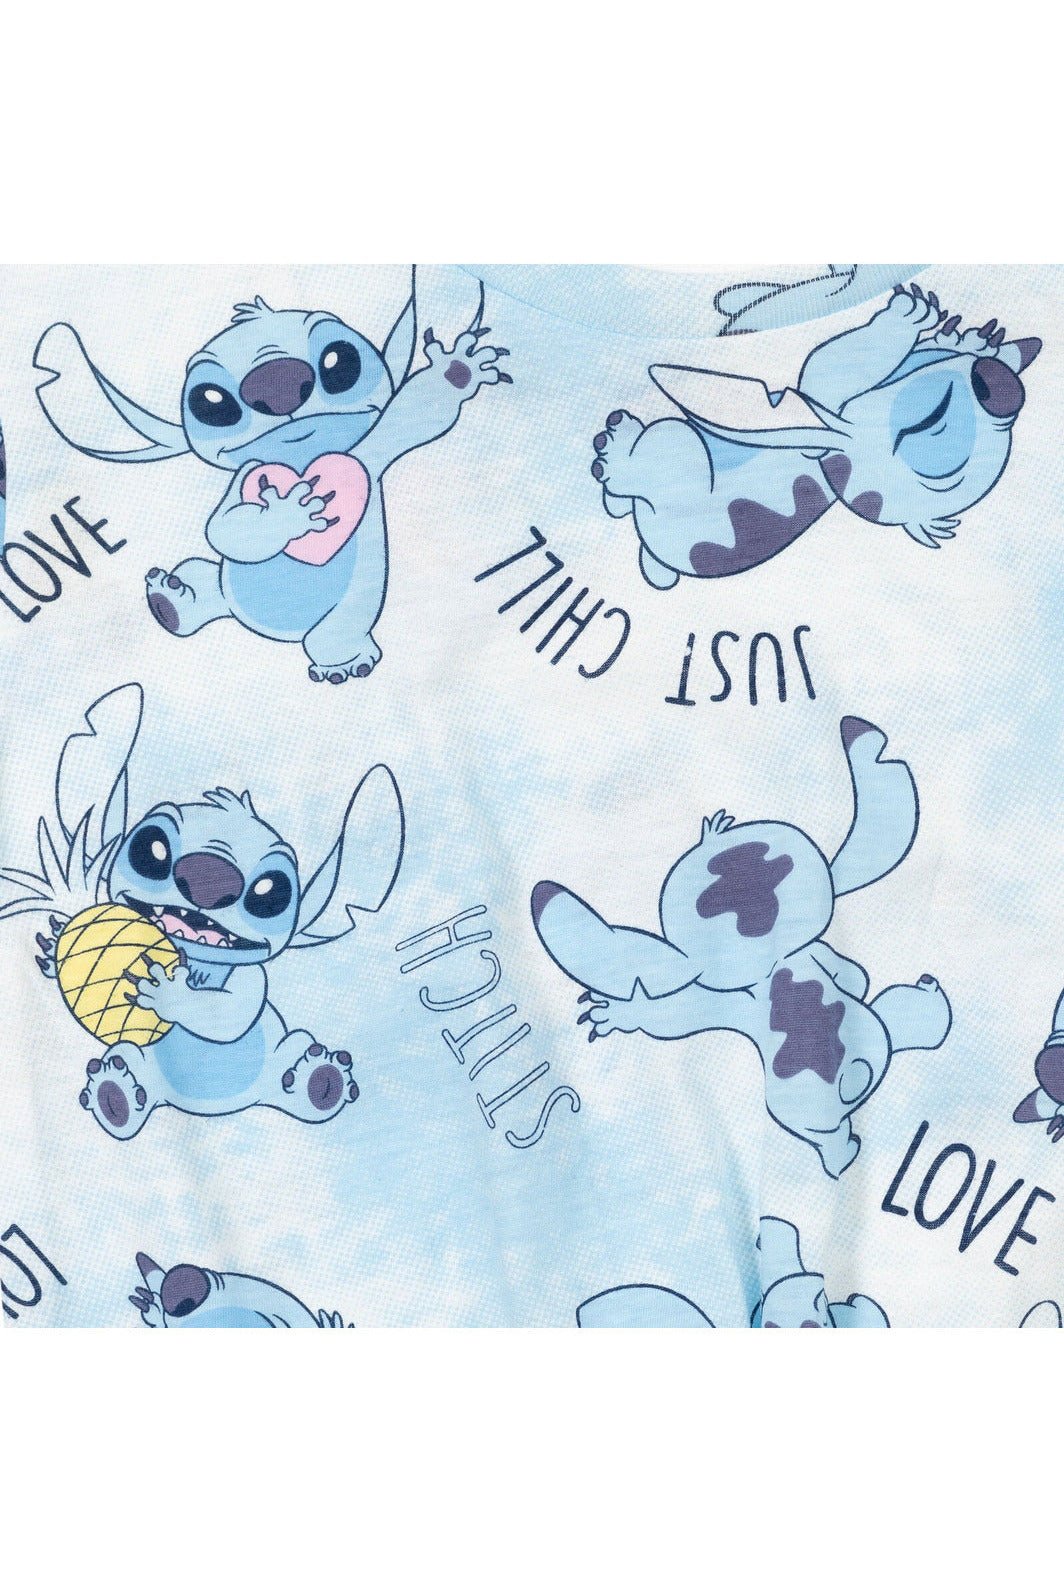 Lilo & Stitch 2 Pack Graphic T-Shirts - imagikids